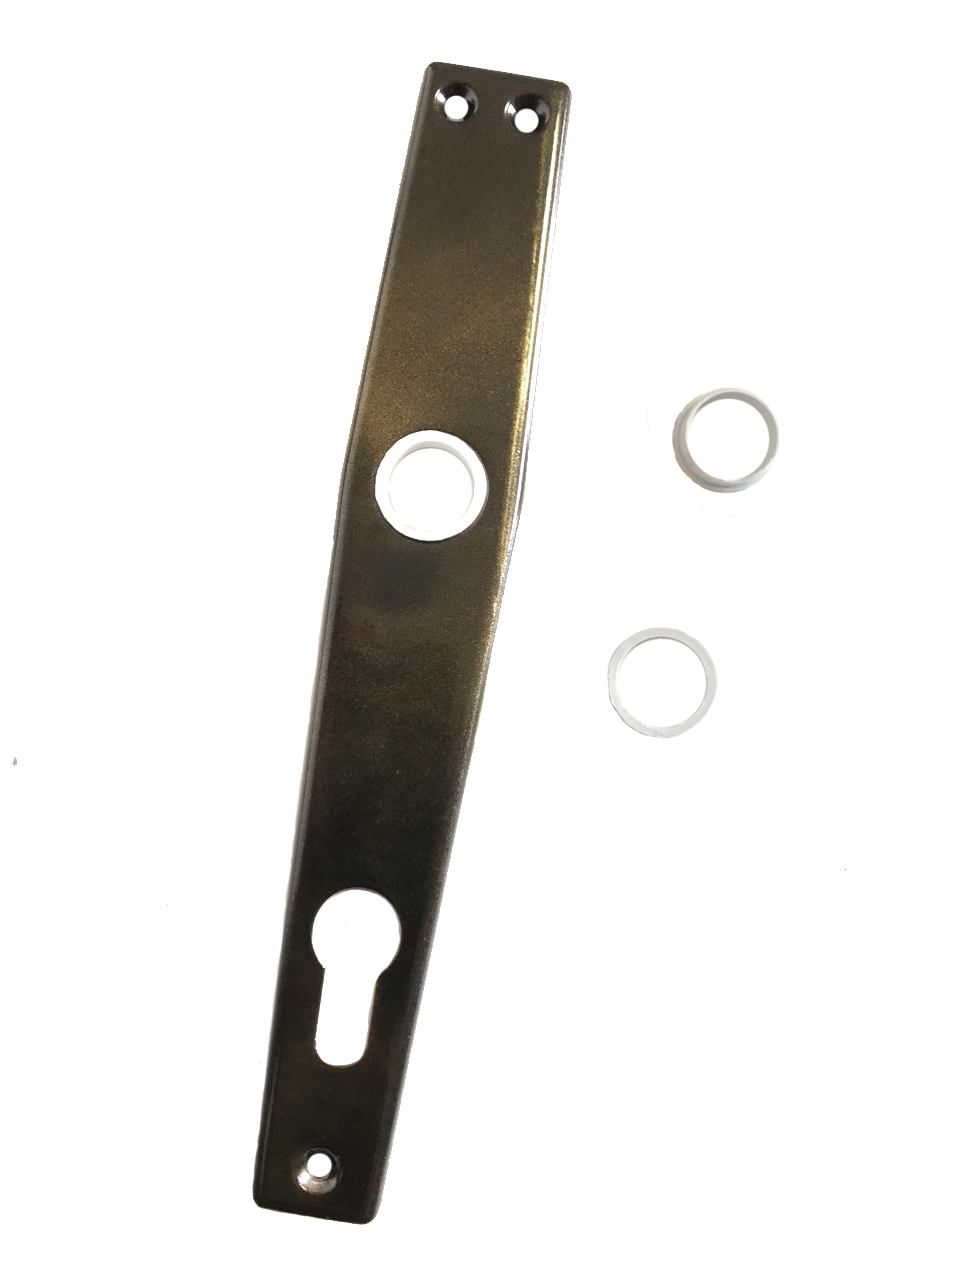 PVC ring/adapter for door handle